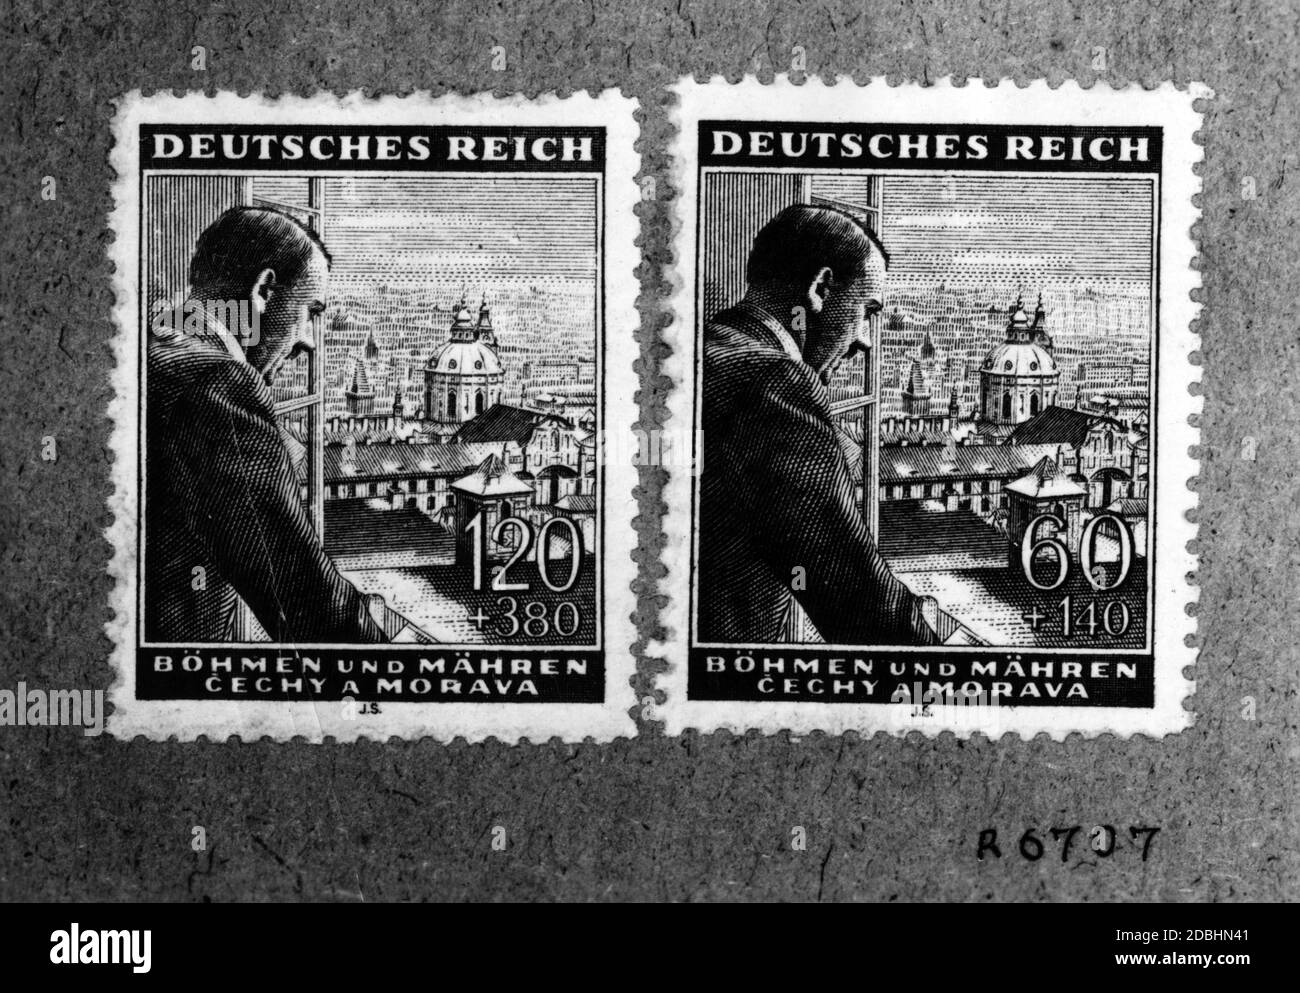 Adolf Hitler als Briefmarkenmotiv für das Deutsche Reich. Gezeigt ist Hitler auf einem Motiv von Böhmen und Mähren mit der Stadt Prag. Es handelt sich um Halbpostmarken einer Sonderserie der Reichspost, die von 1943 bis Kriegsende gültig war. Der markierte Betrag + wurde als Spende erhalten. Stockfoto